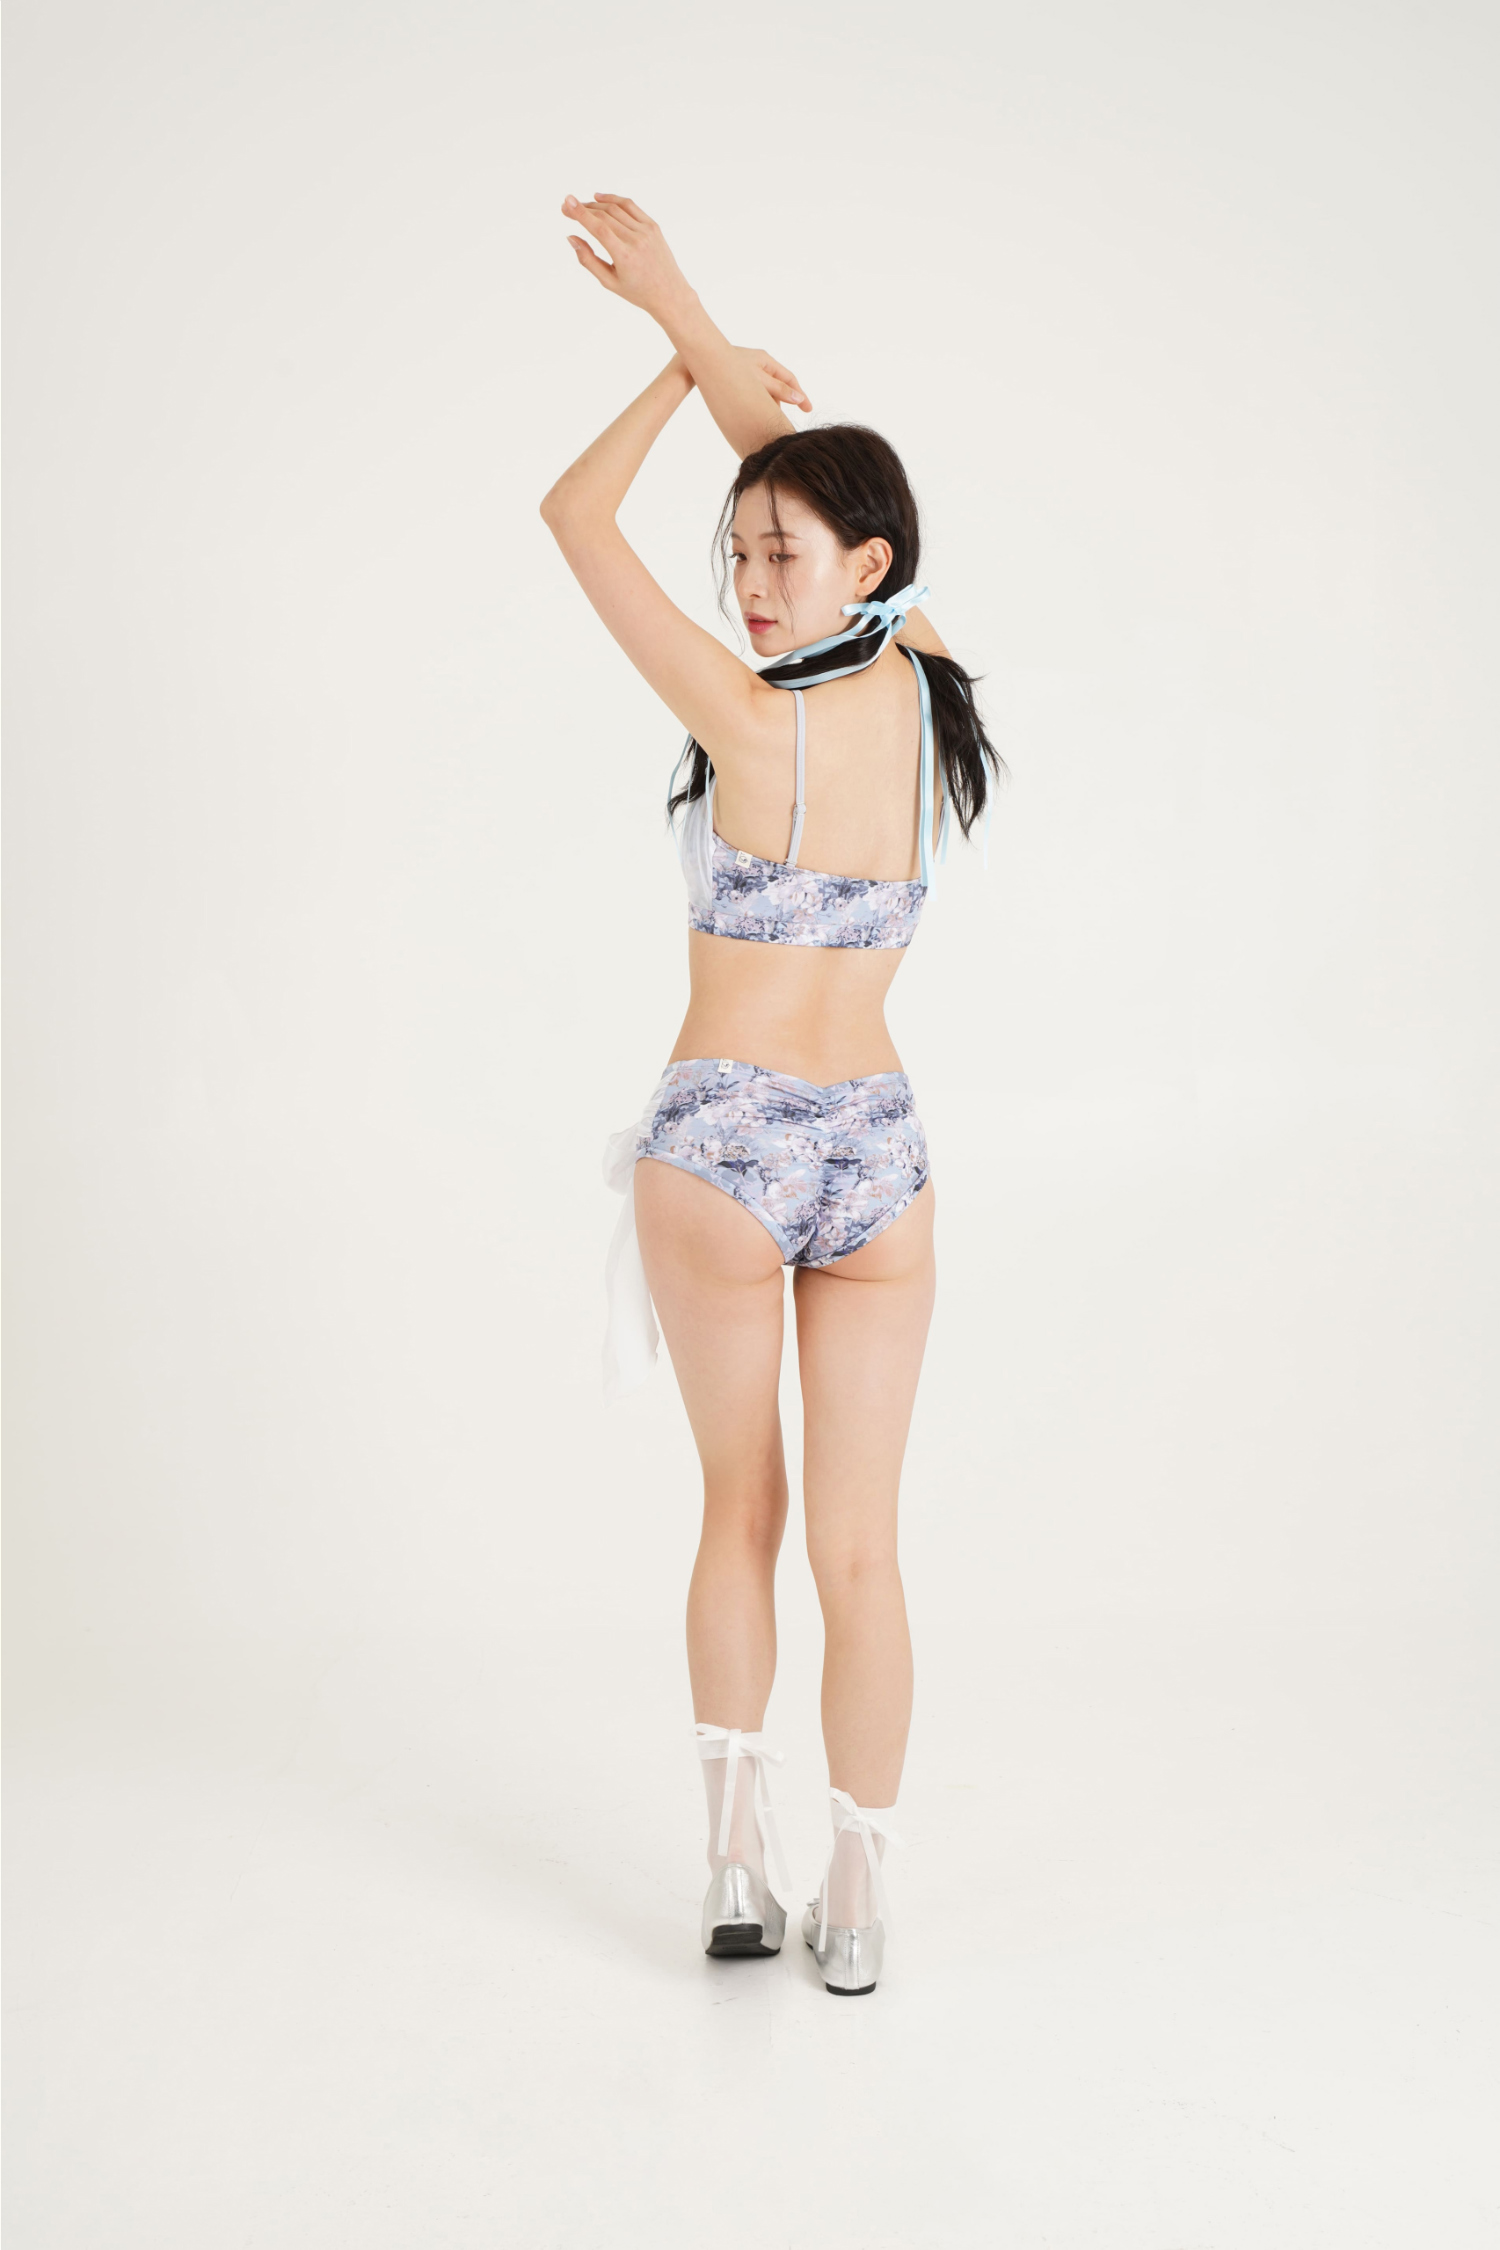 Swimsuit/Underwear Model Wearing Image-S16L7